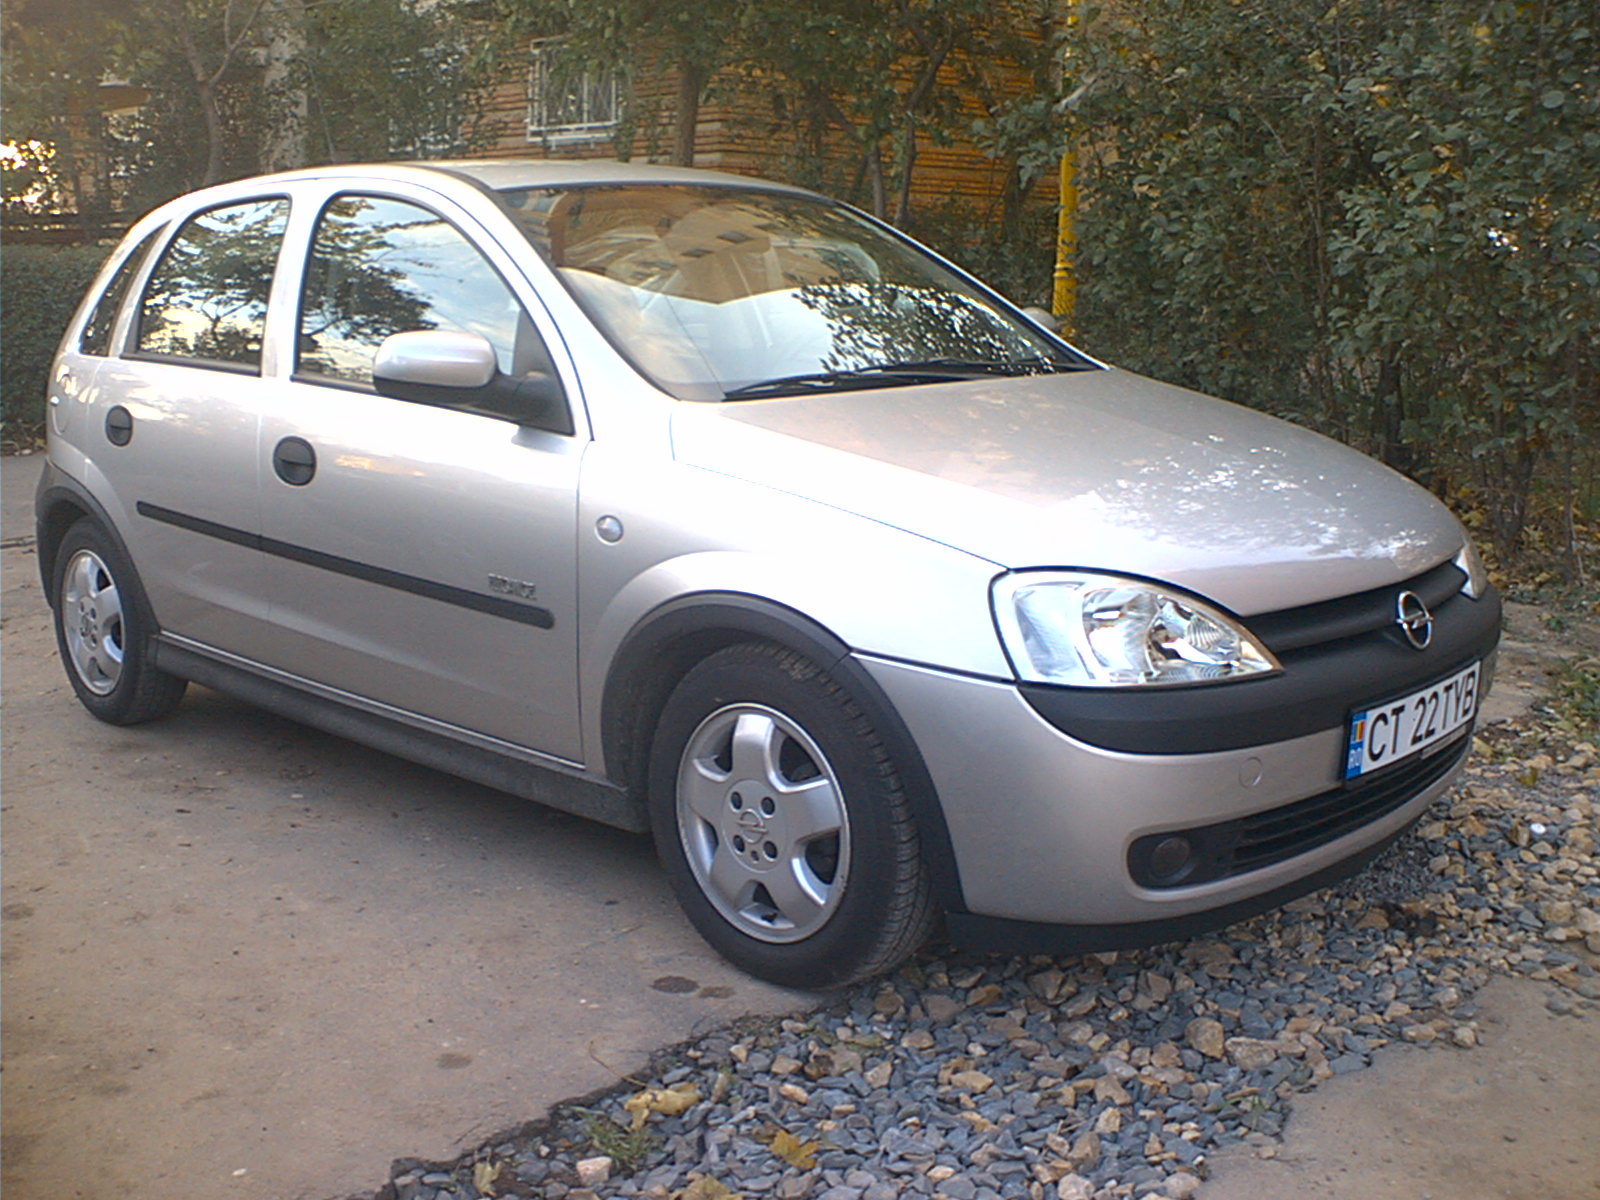 Опель корса 2001 год. Opel Corsa c 2001. Opel Corsa 2001. Opel Corsa 2004 1.2. Опель Корса 1.2 2001.